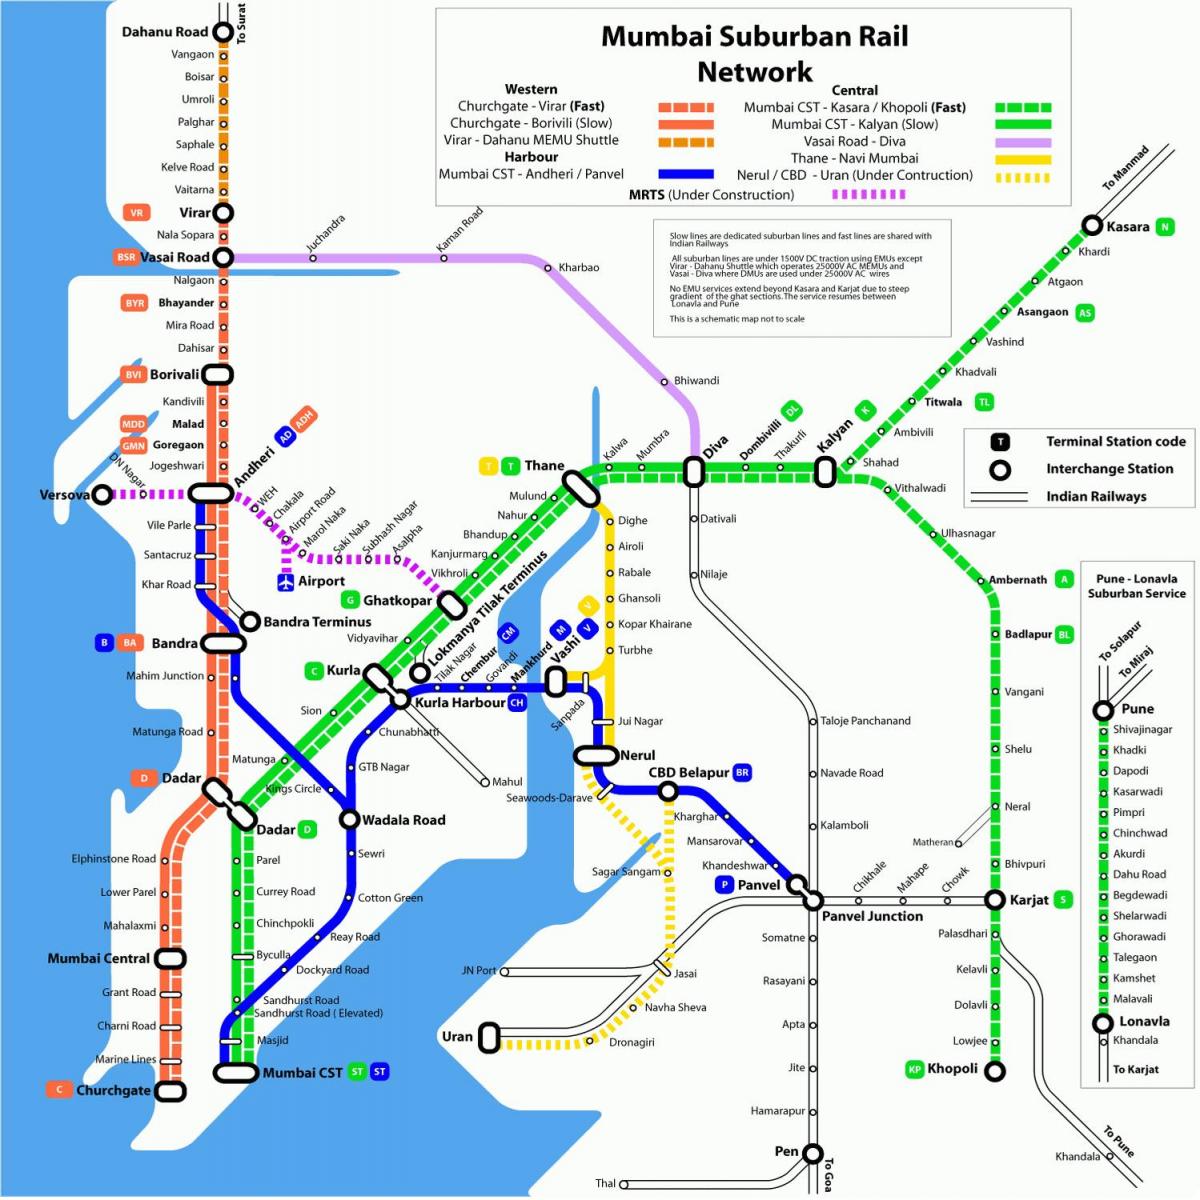 Βομβάη τοπικό σιδηροδρομικό χάρτη